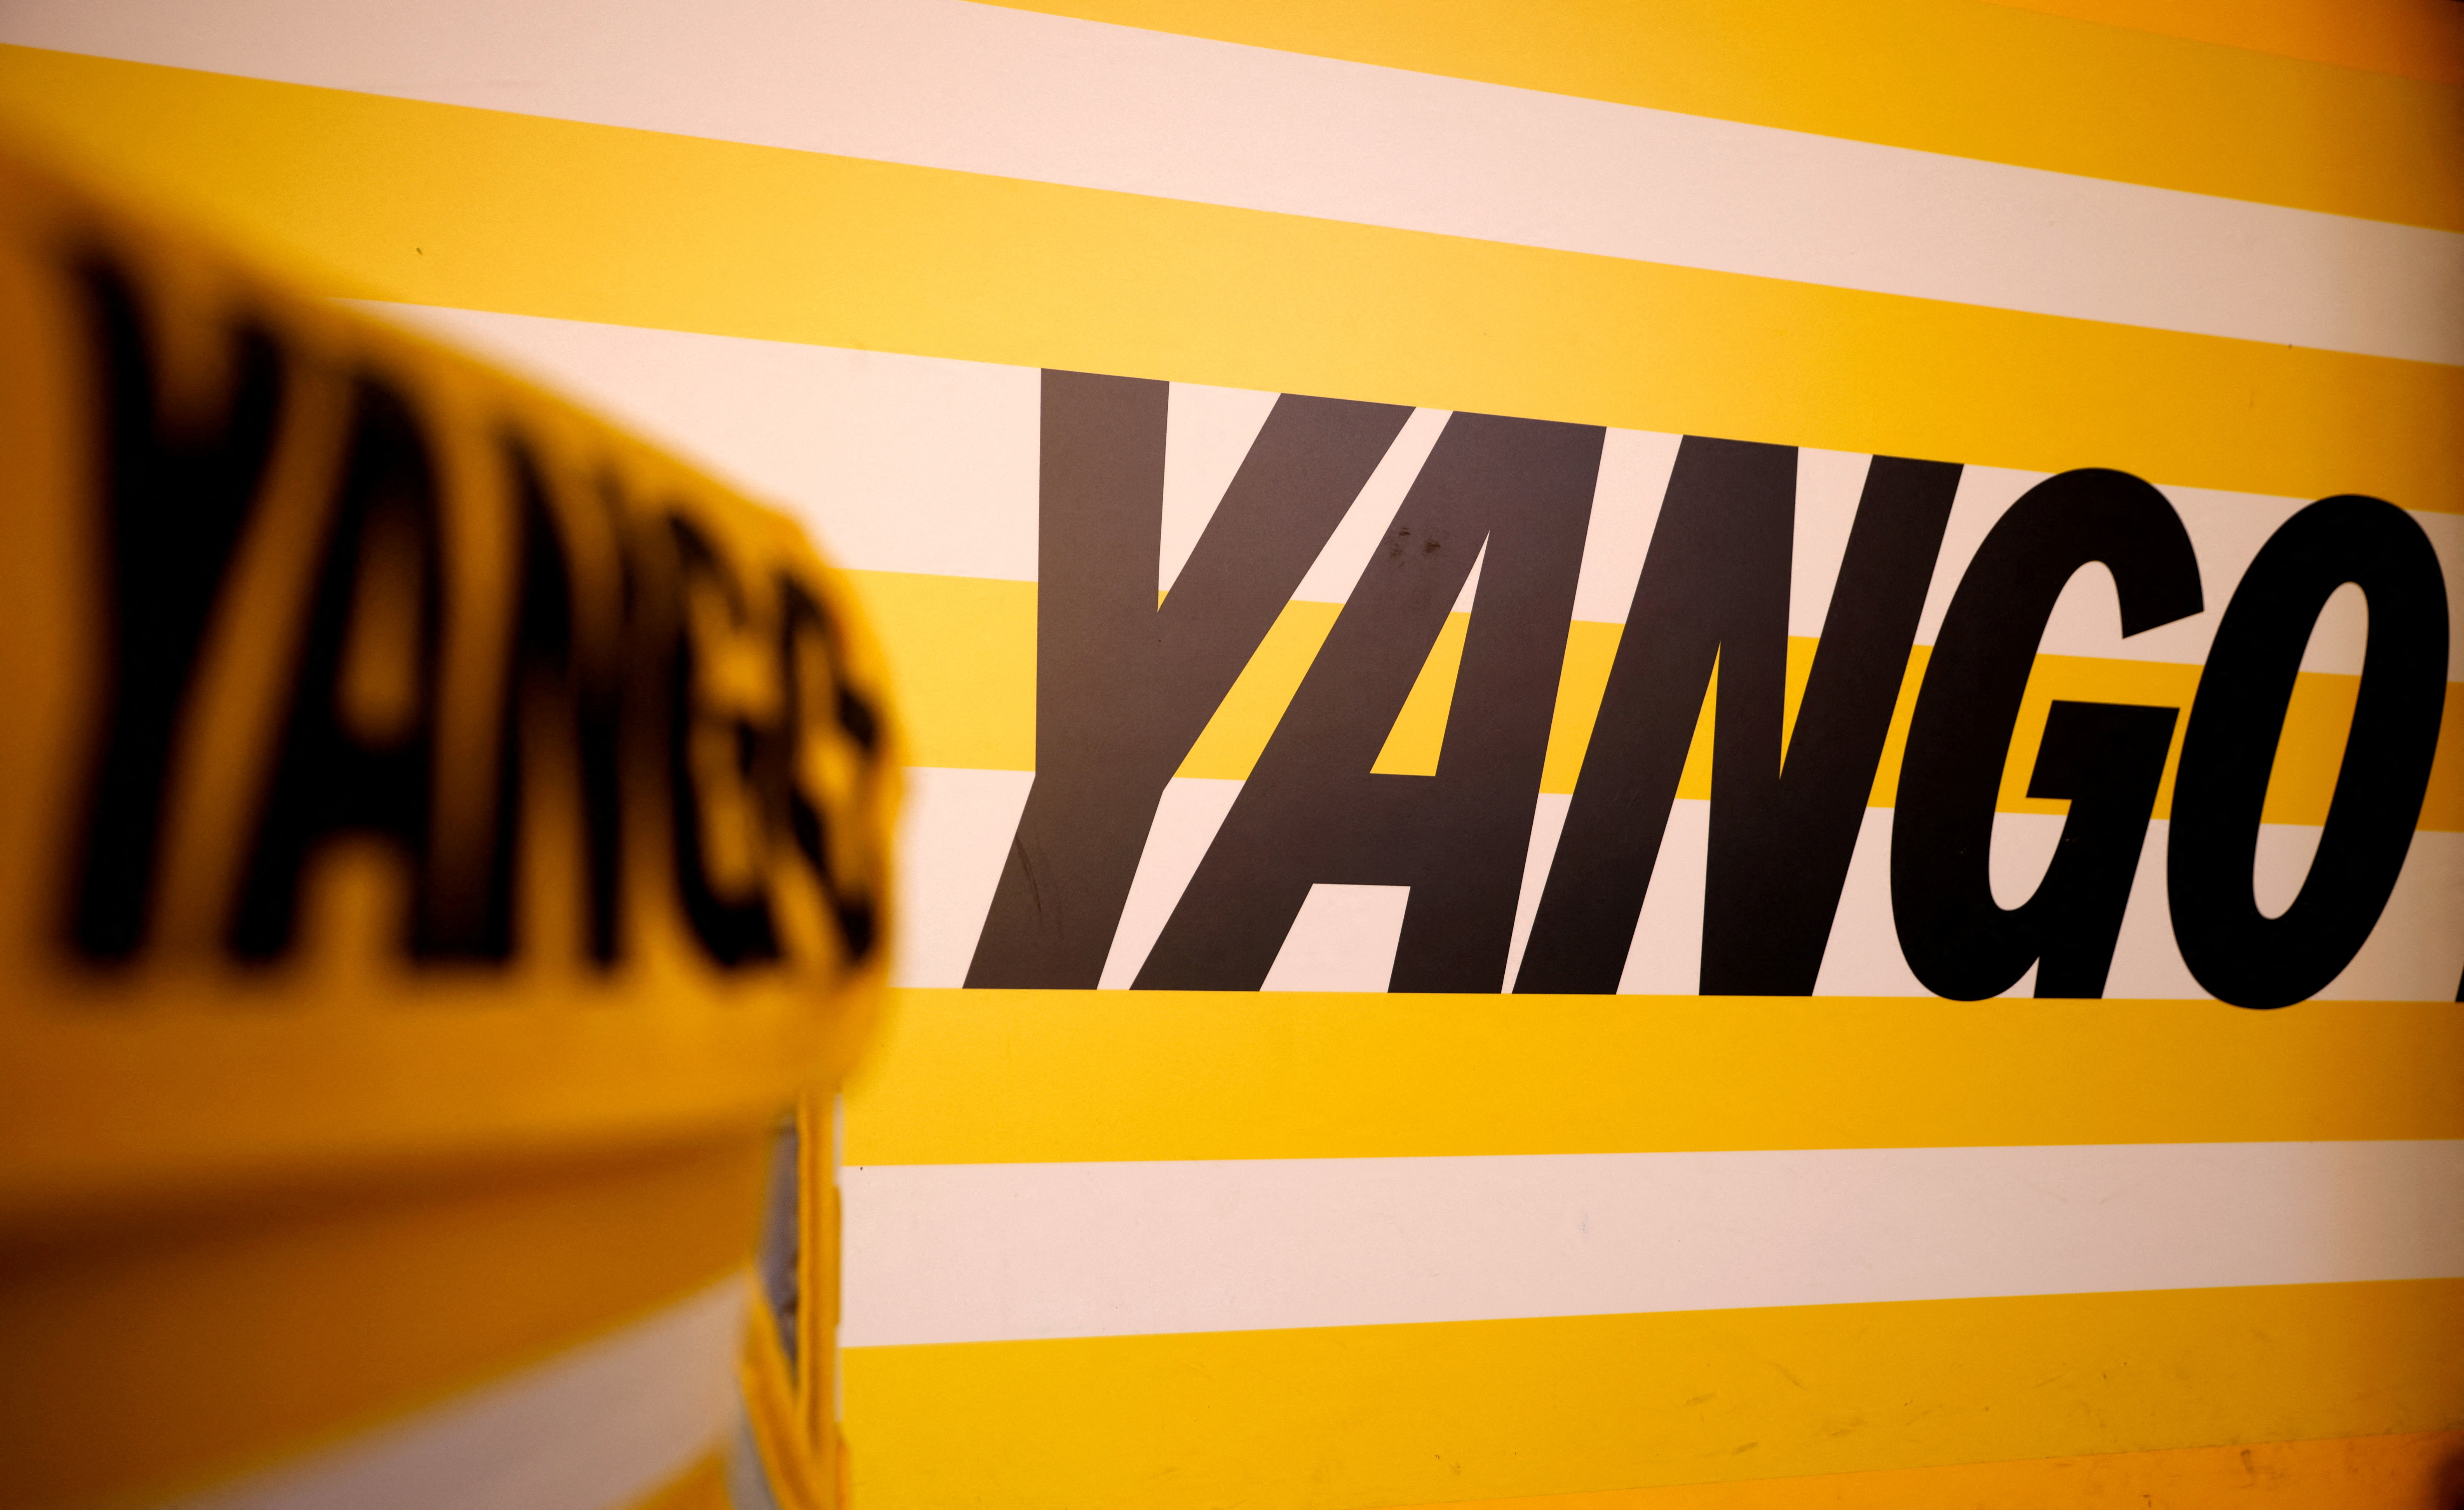 Yango’s Yandex در حال مذاکره با ناظر هلندی بر سر حفاظت از داده ها است